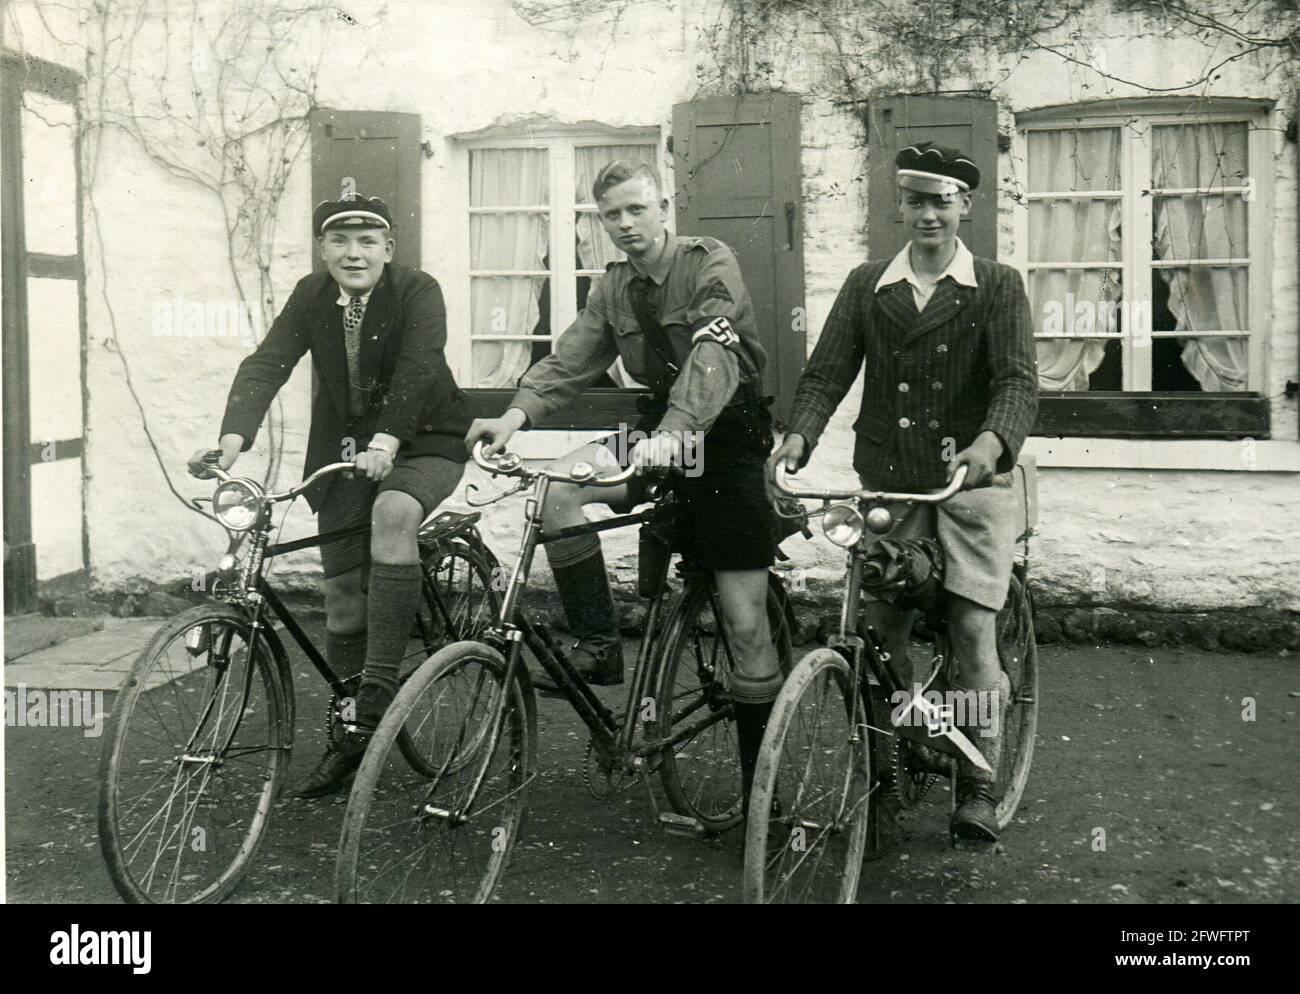 hitler-youth-boys-on-bikes-1934-landheim-wiesbach-eppelborn-germany-2FWFTPT.jpg